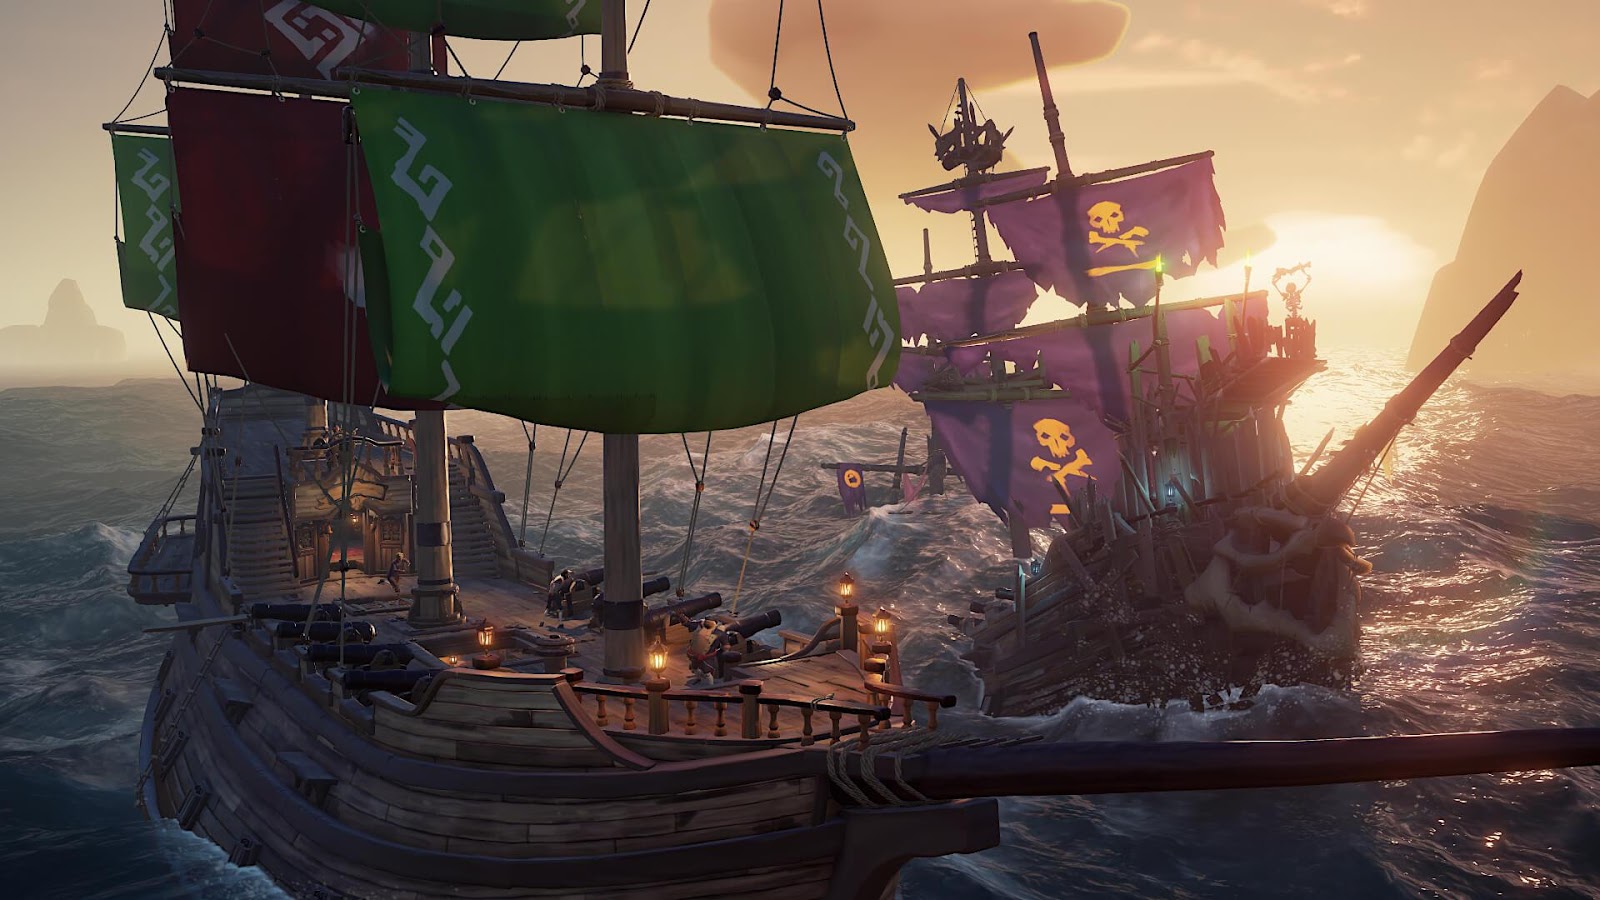 Tựa game hành động phiêu lưu Sea of Thieves sắp cập bến Steam, anh em đã sẵn sàng trở thành cướp biển huyền thoại?